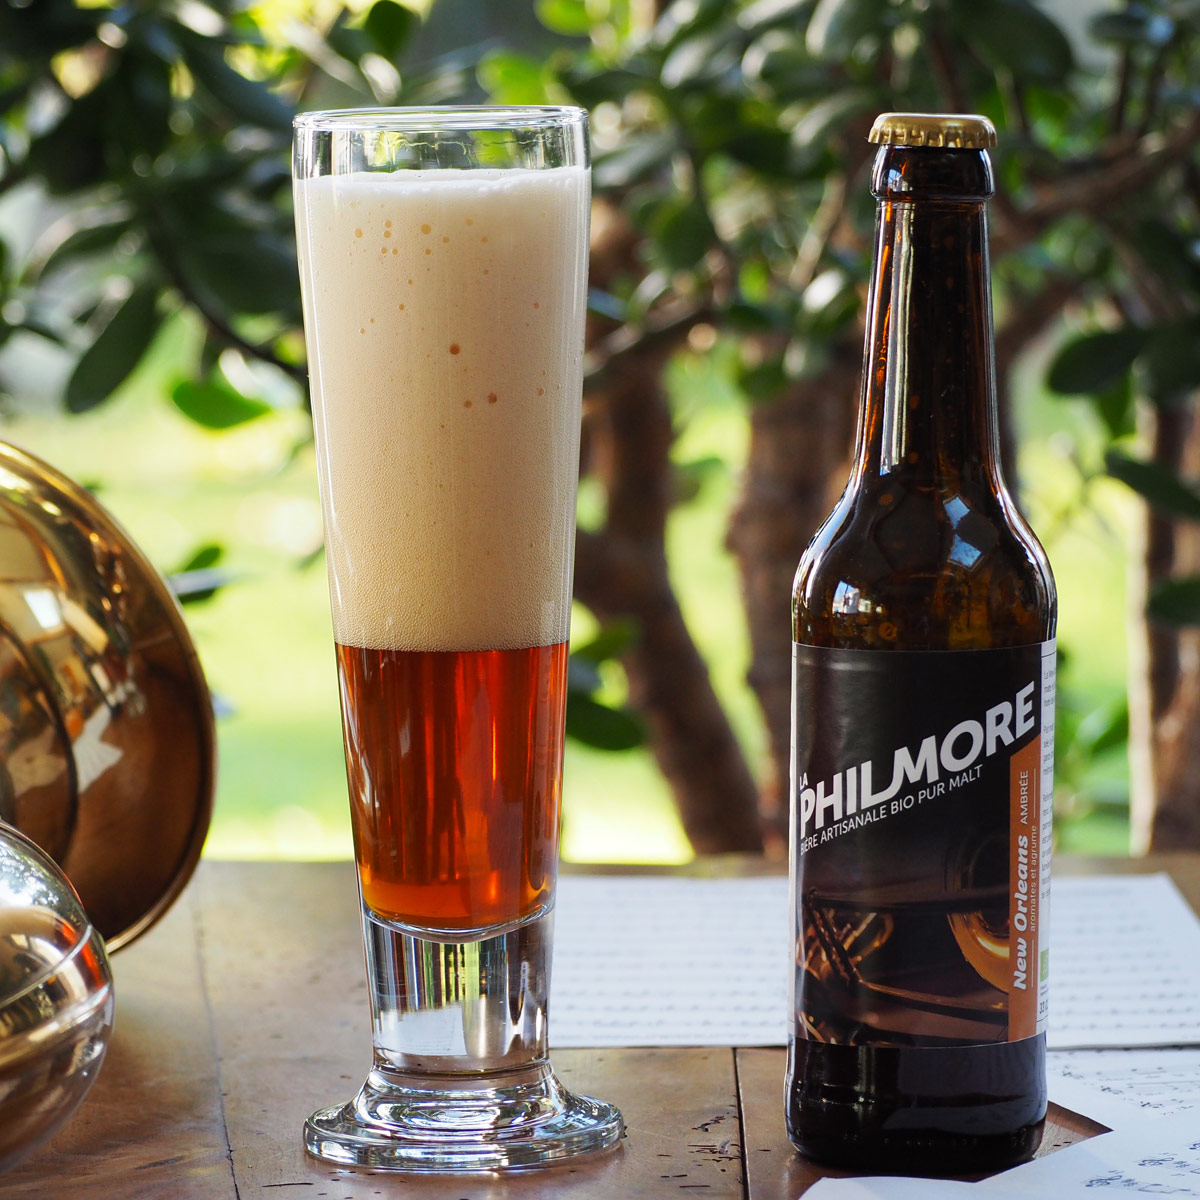 La Philmore New Orleans – bière artisanale bio pur malt